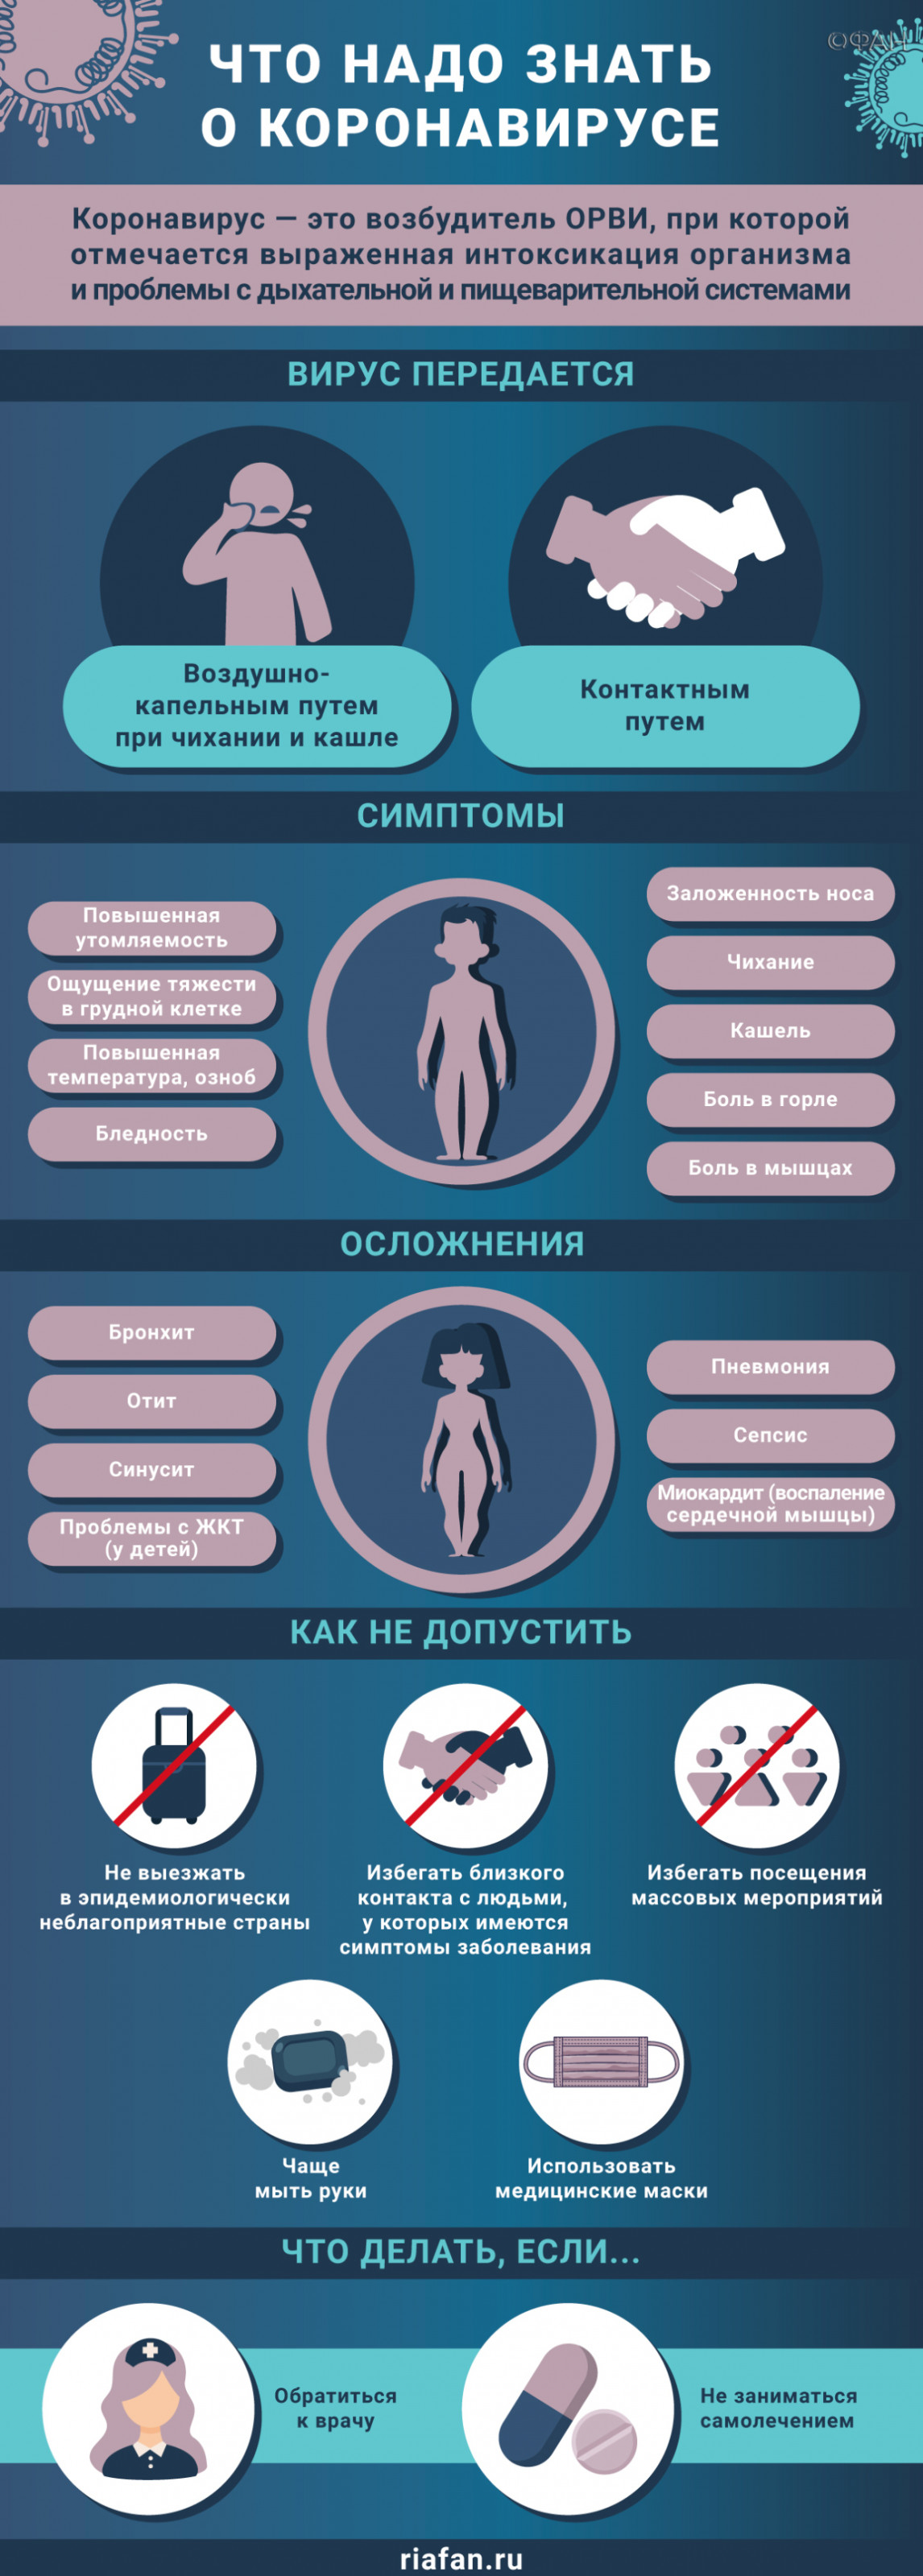 В Петербурге за сутки выявили 163 новых случая коронавируса